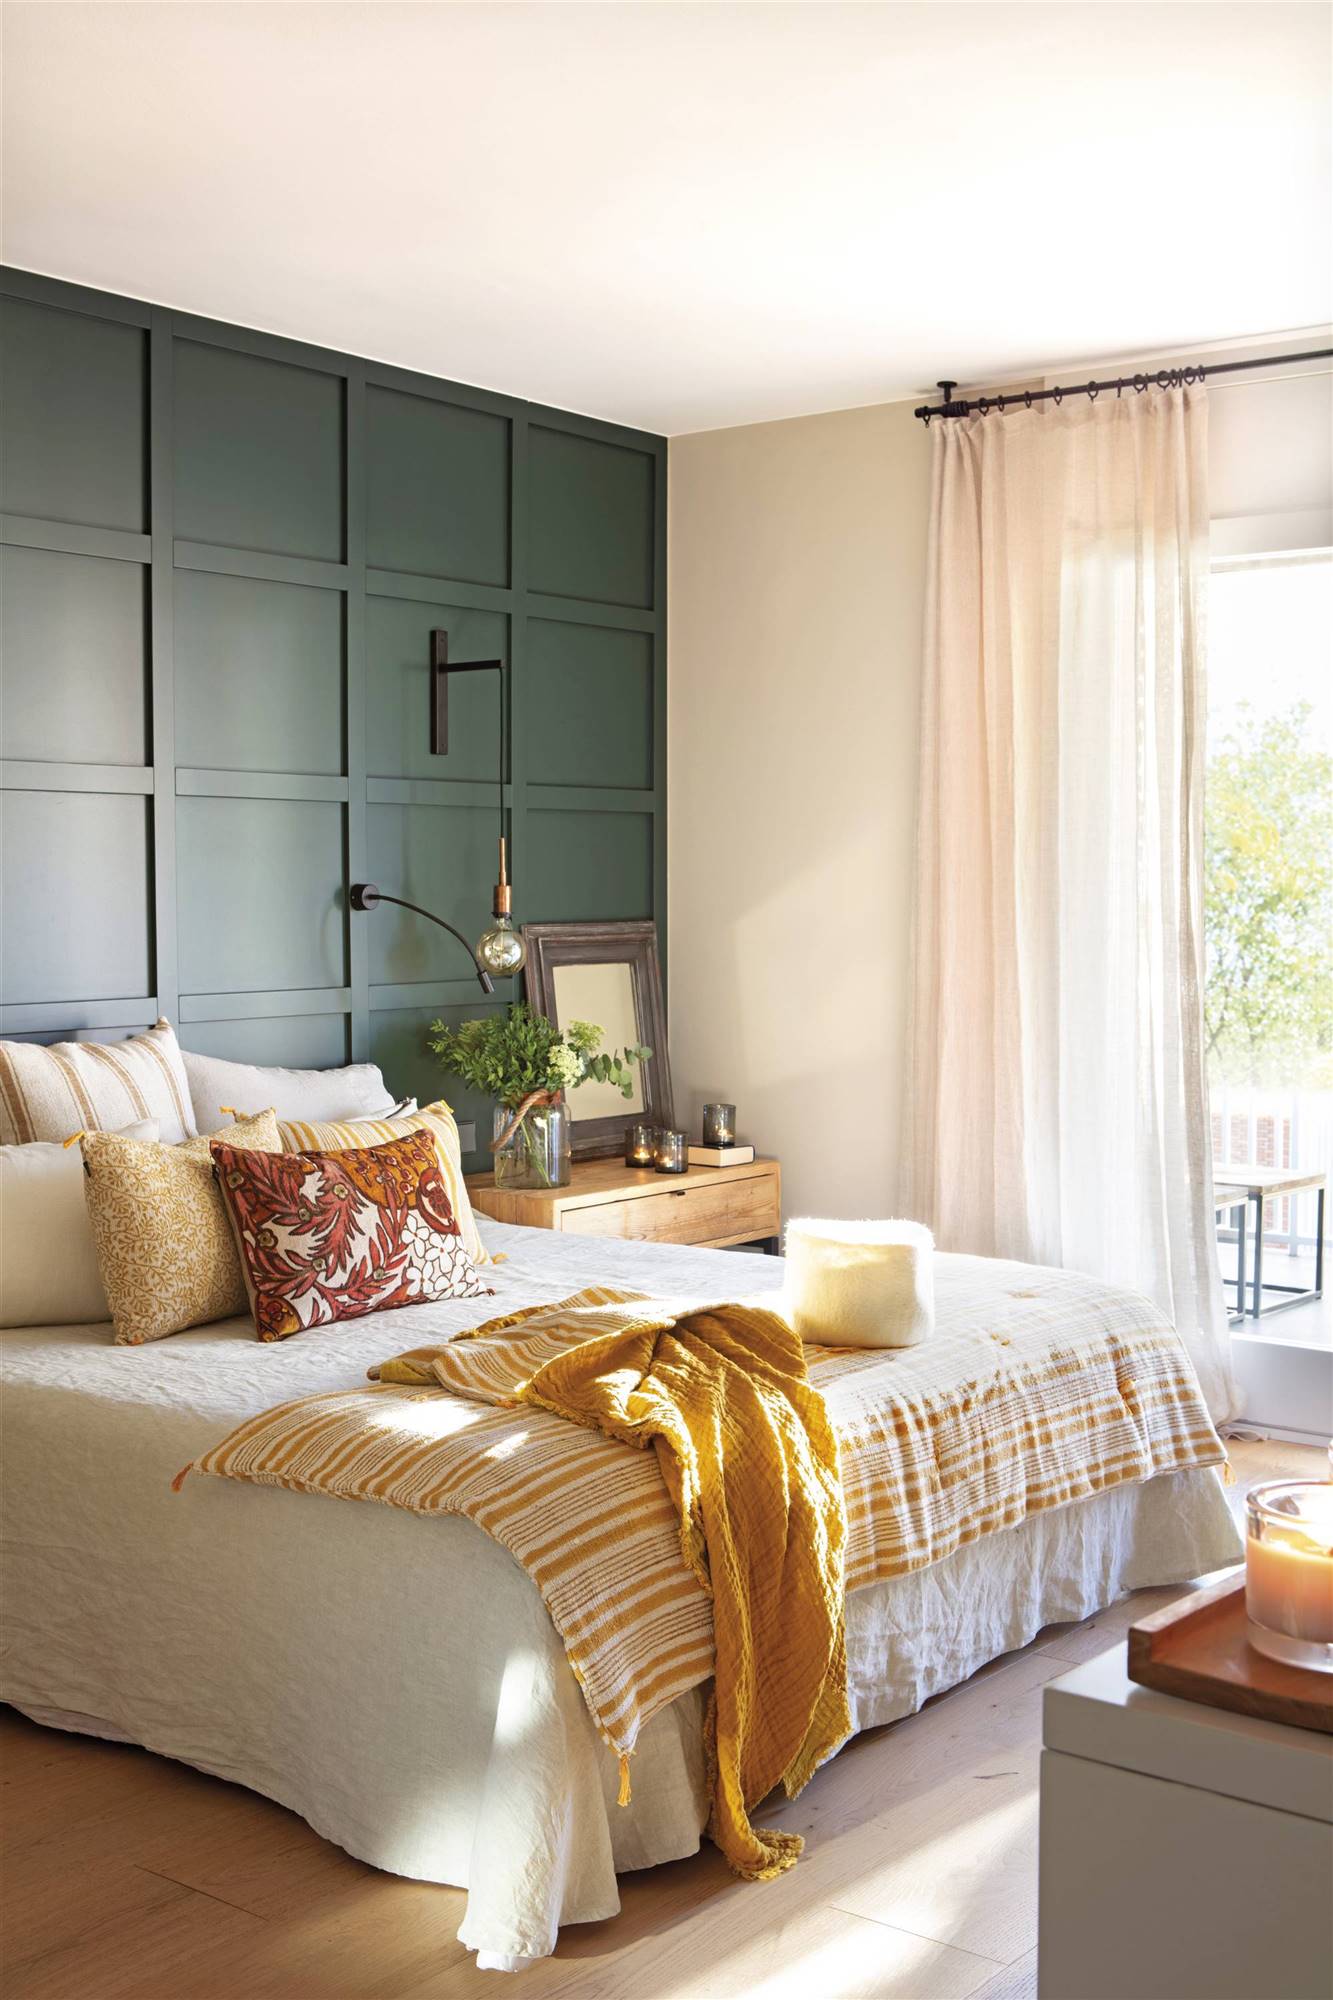 Dormitorio con cabecero de madera pintado en verde.